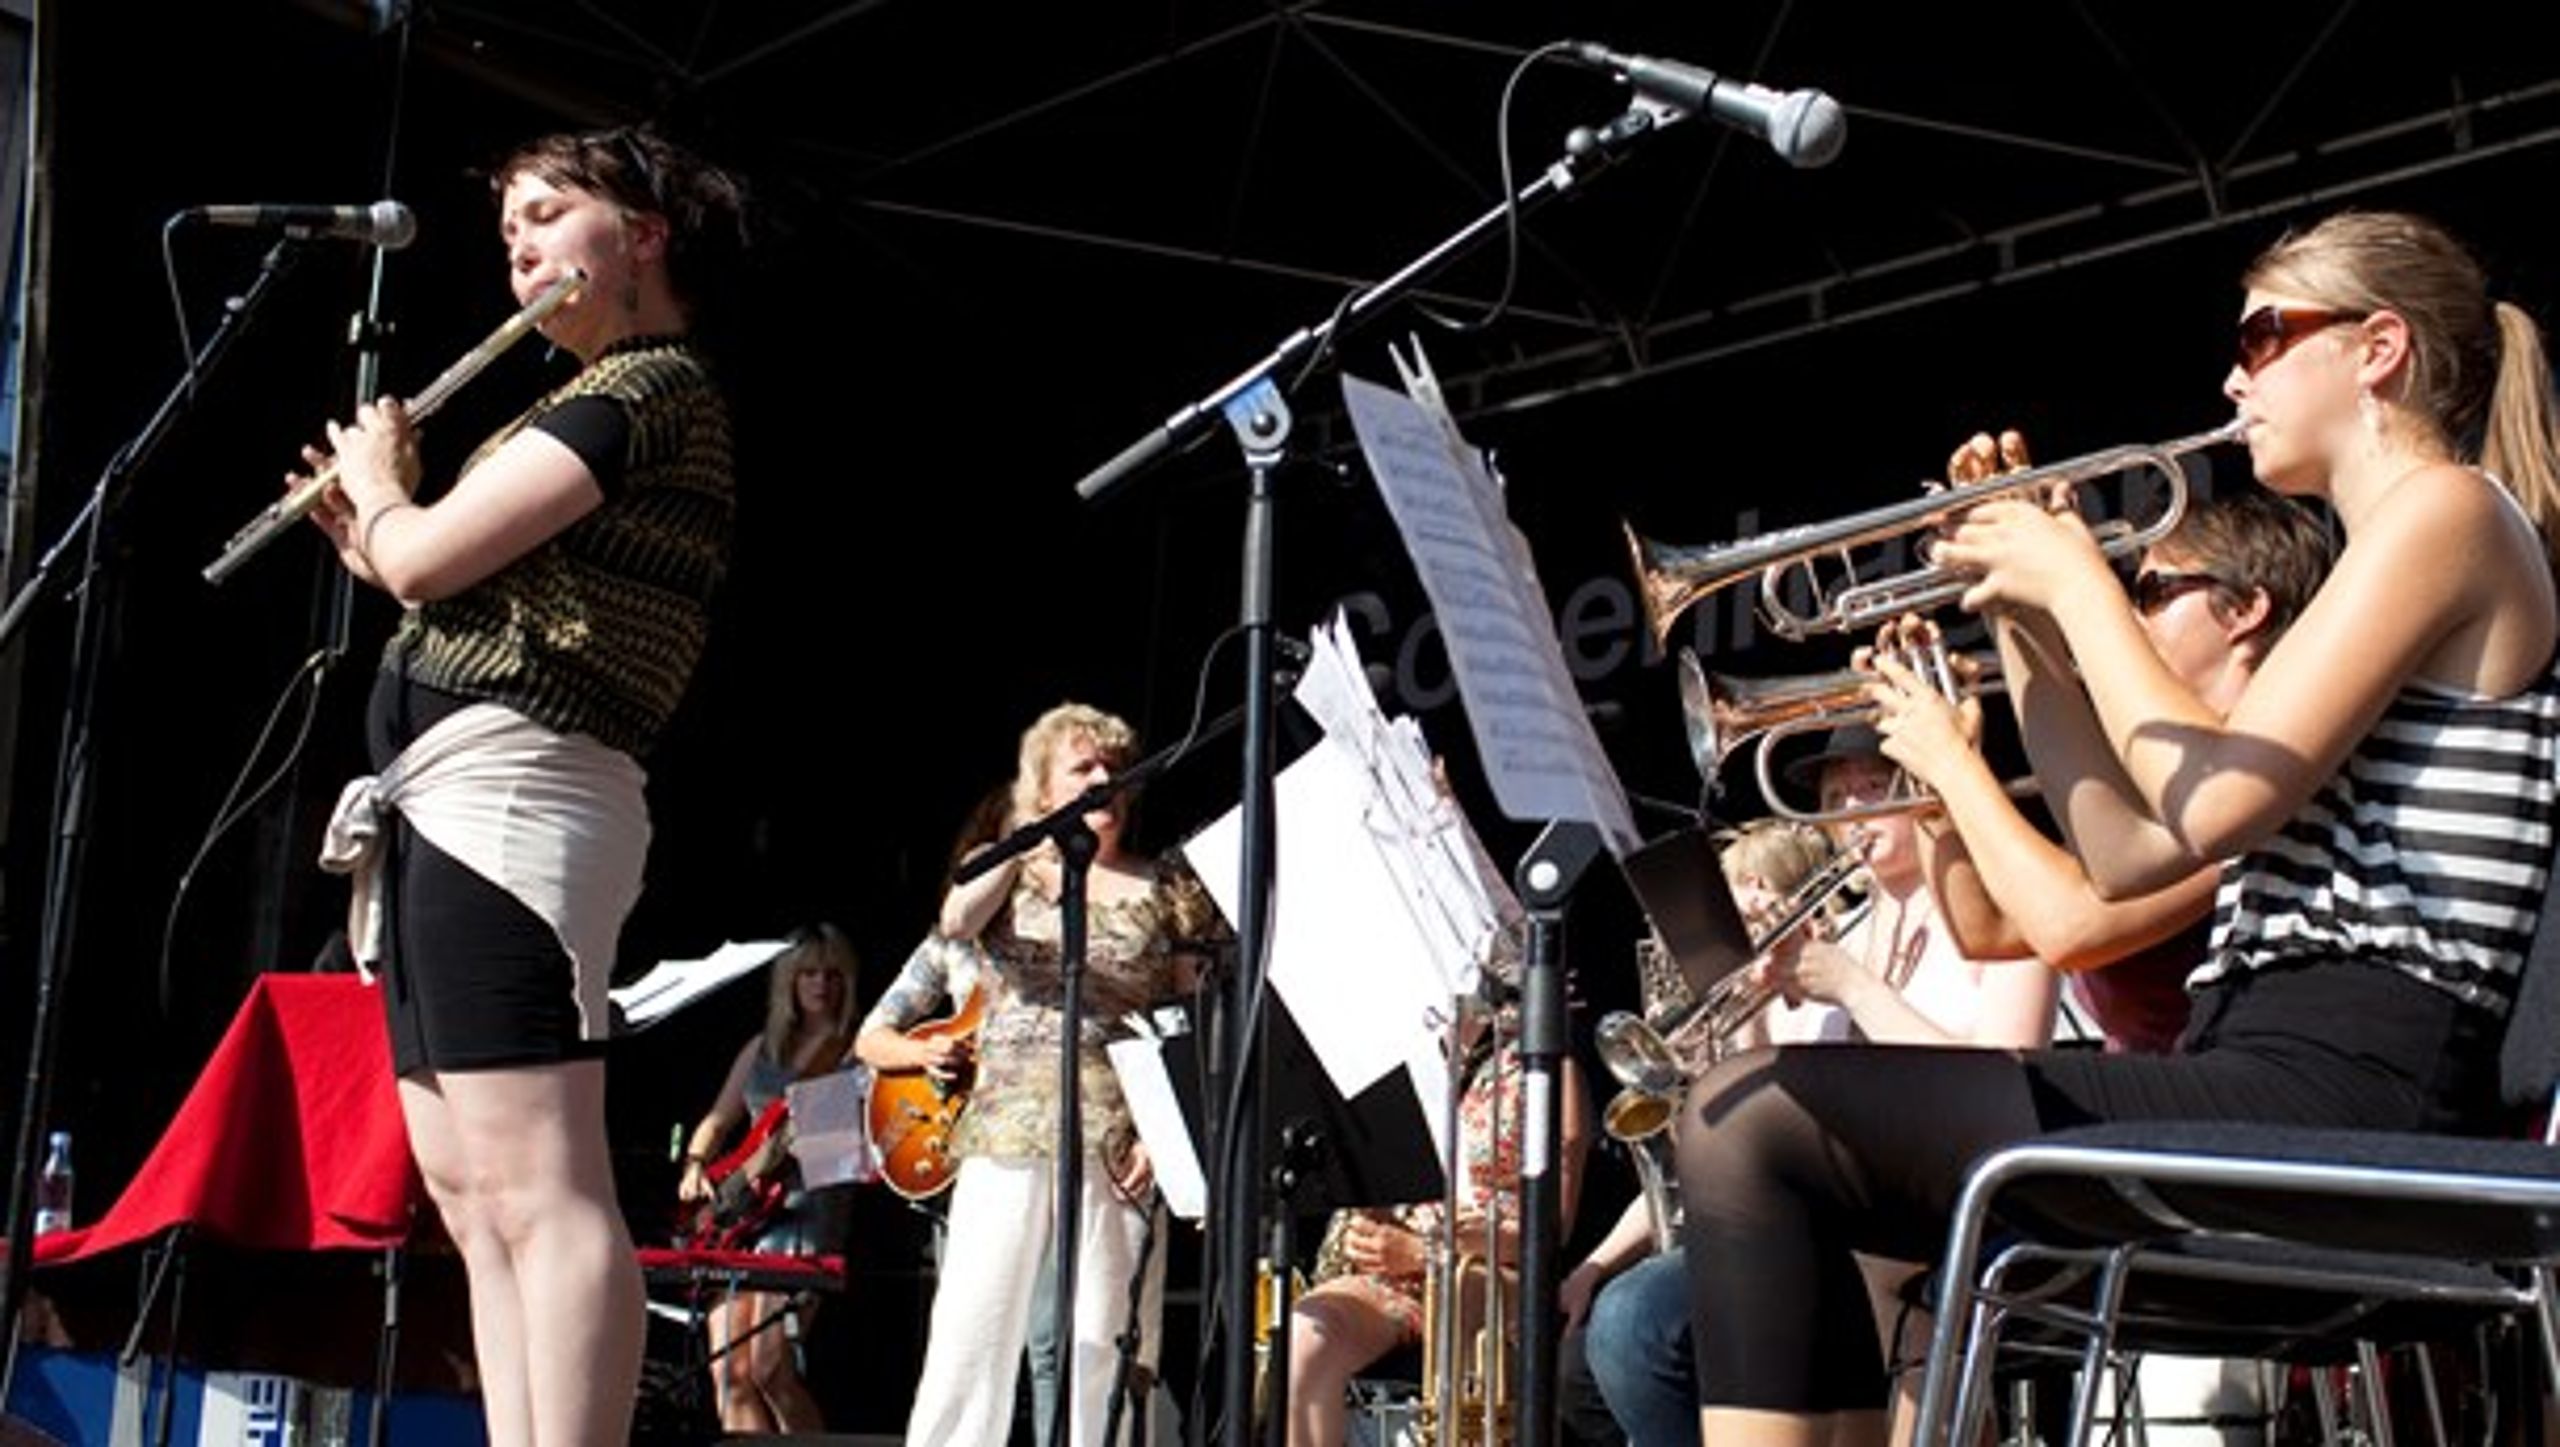 JazzCamp for Piger er et af de initiativer, der de seneste år har sat fokus på den manglende kvindelige repræsentation i rytmisk musik.